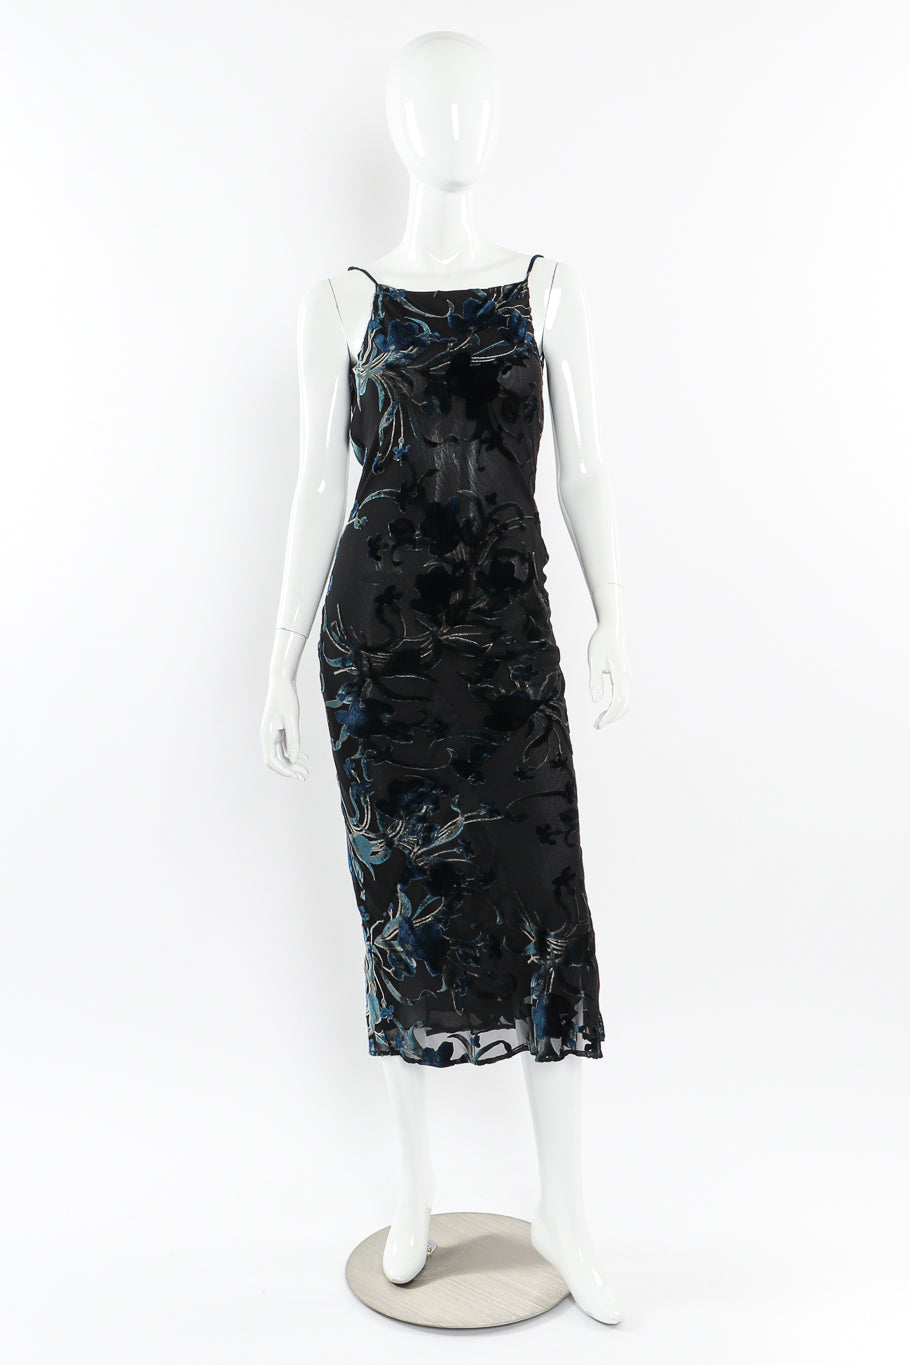 Velvet burnout slip dress by Richard Tyler on mannequin @recessla